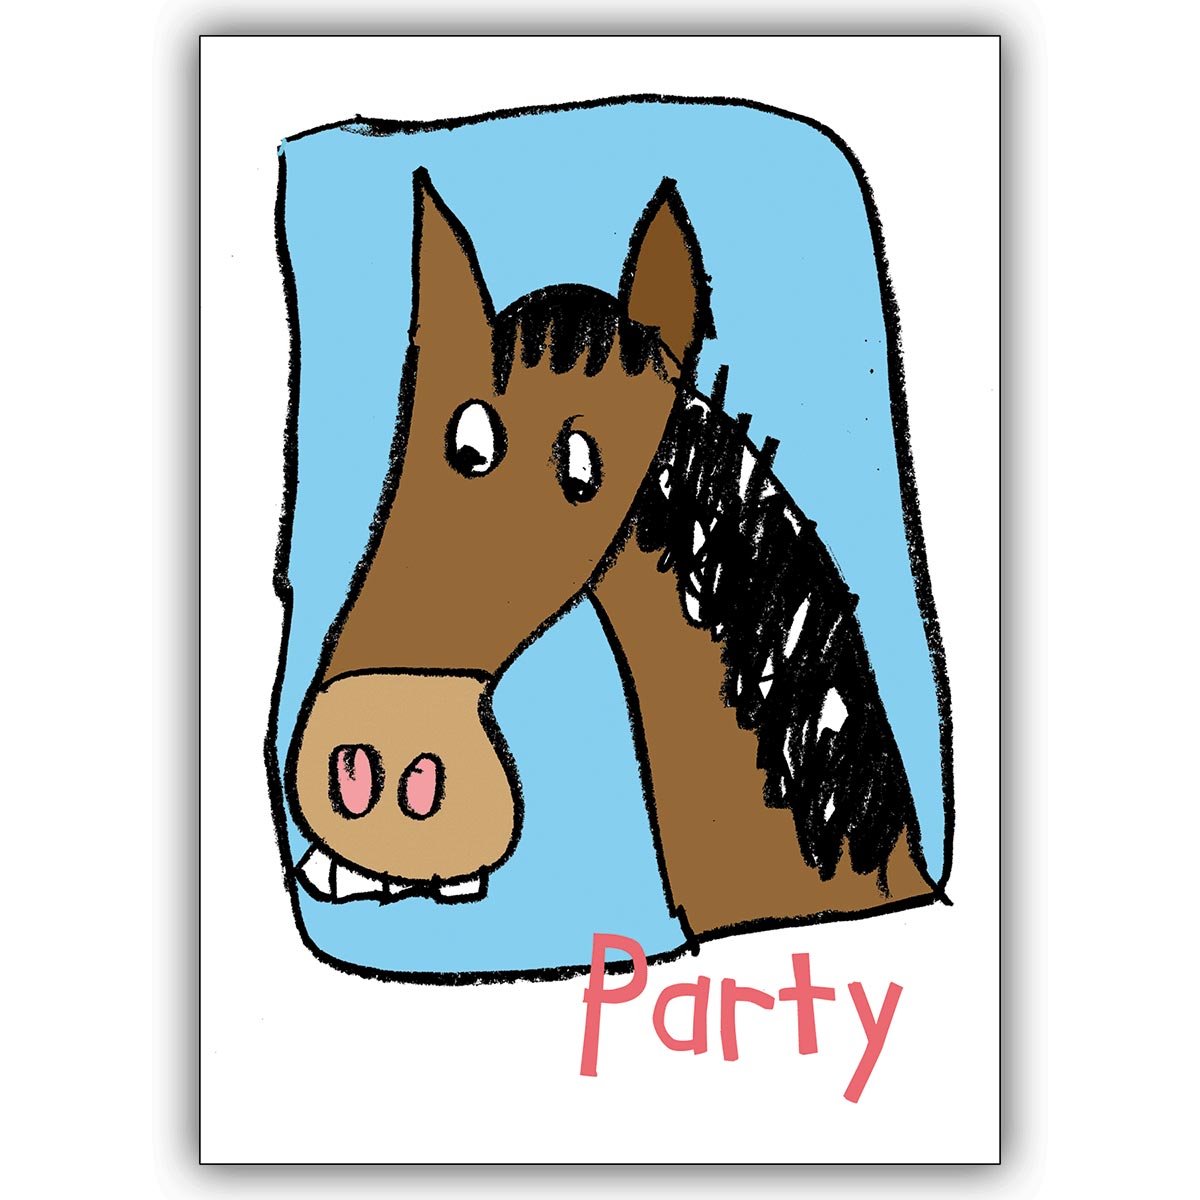 Lustige Einladung Zum Geburtstag Zur Party Mit Pferd Kartenkaufrausch De